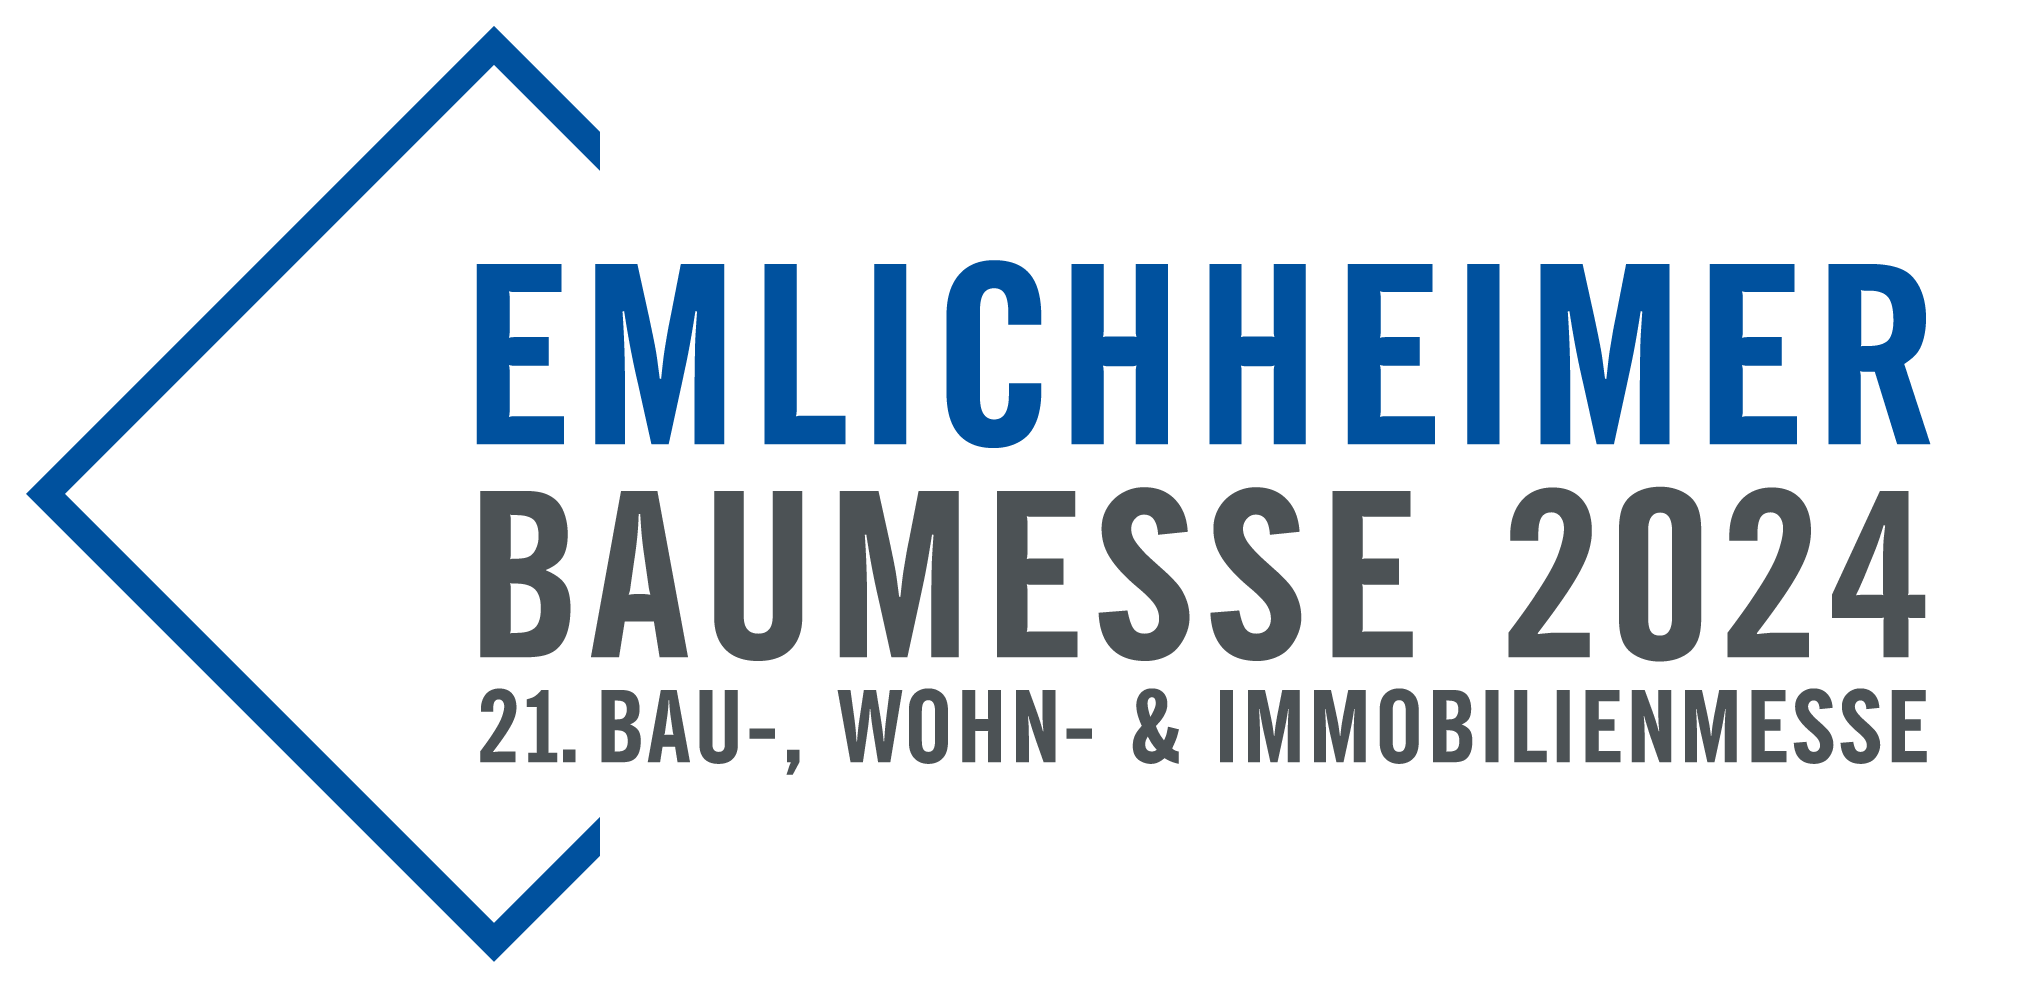 Baumesse Emlichheim 2024